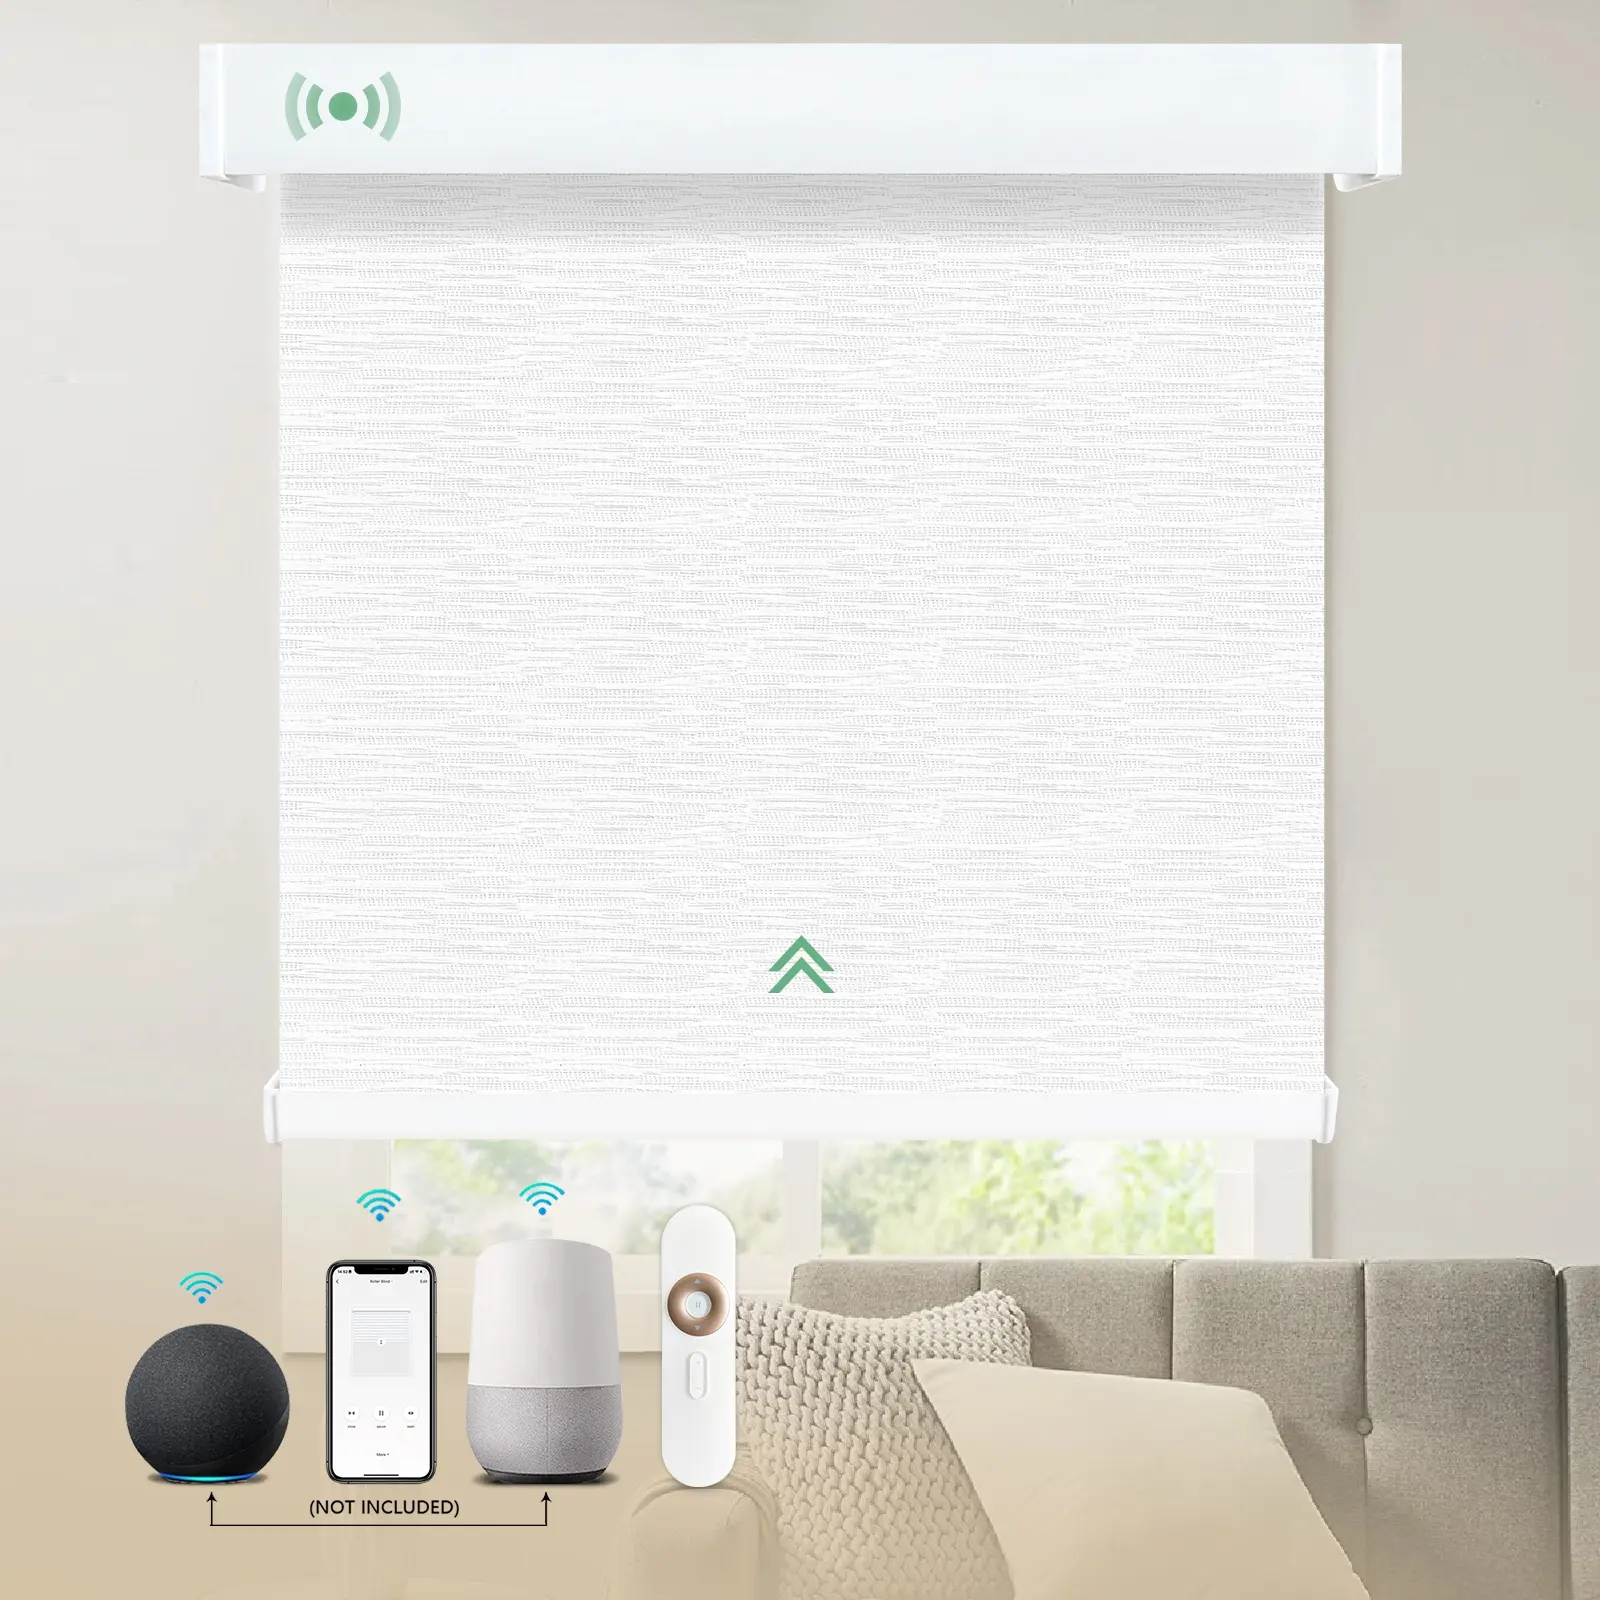 Tapparelle automatiche di controllo remoto WiFi Google con parasole motorizzate tapparelle elettriche intelligenti per finestre realizzate in cina